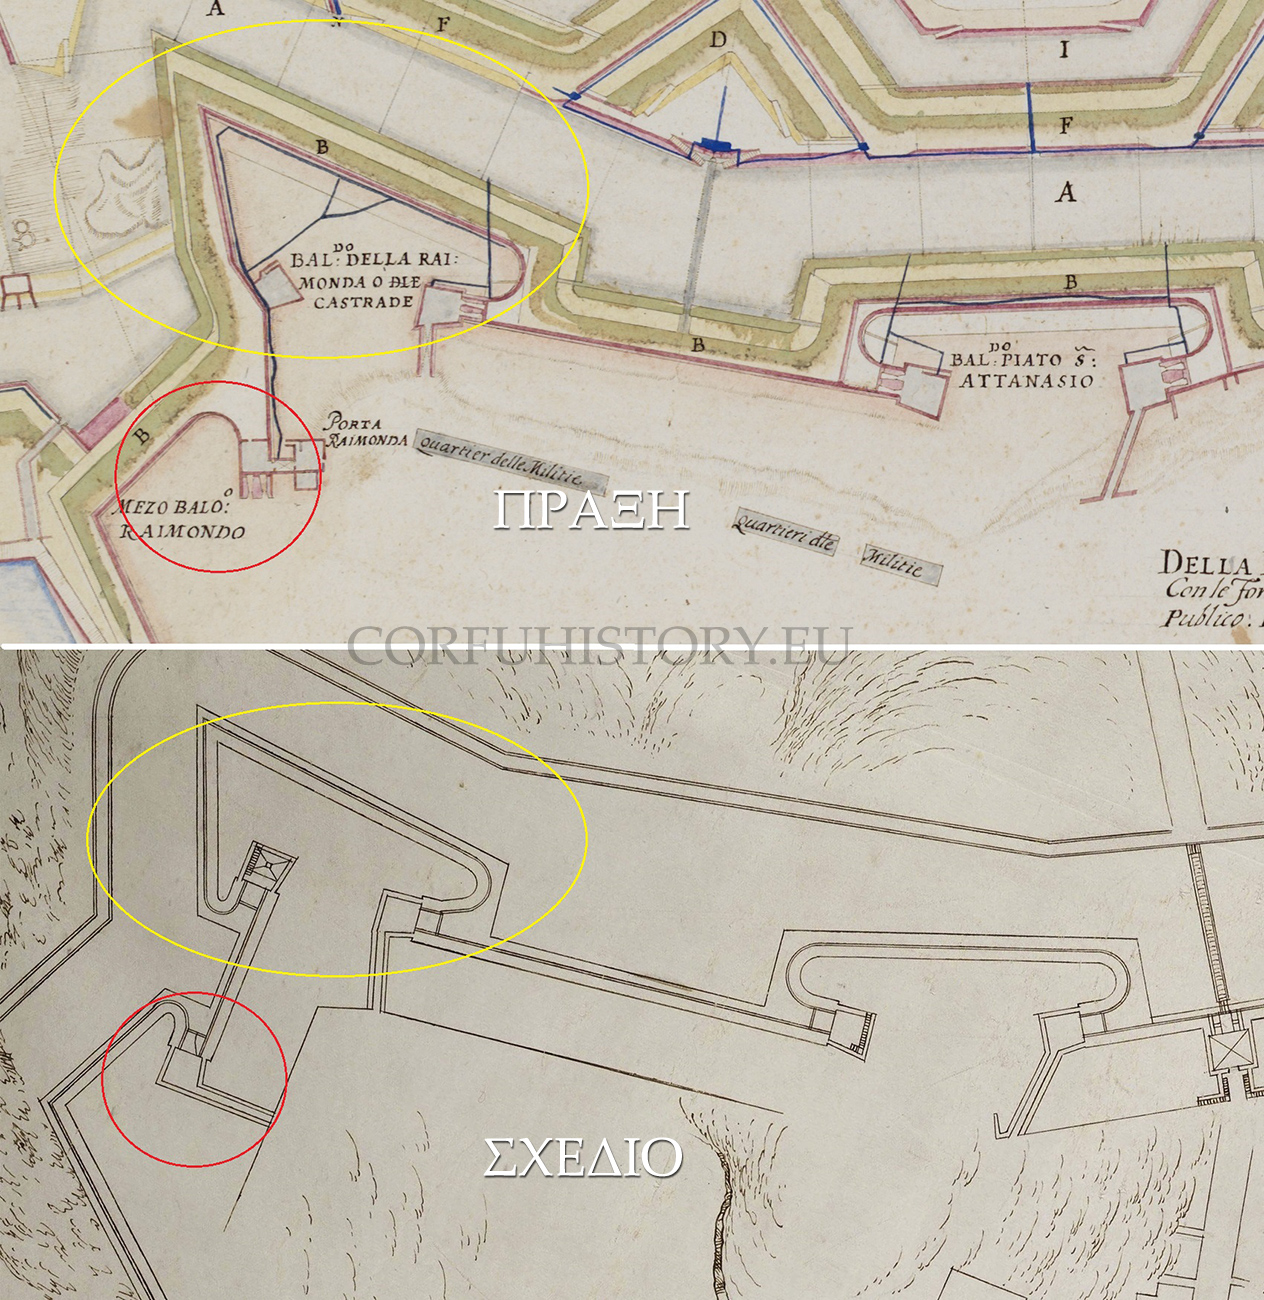 Η διαφορά μεταξύ σχεδίασης του Βιτέλι και τροποποιήσεων των Βενετών μηχανικών στον προμαχώνα και ημιπρομαχώνα Ραϊμόντο.